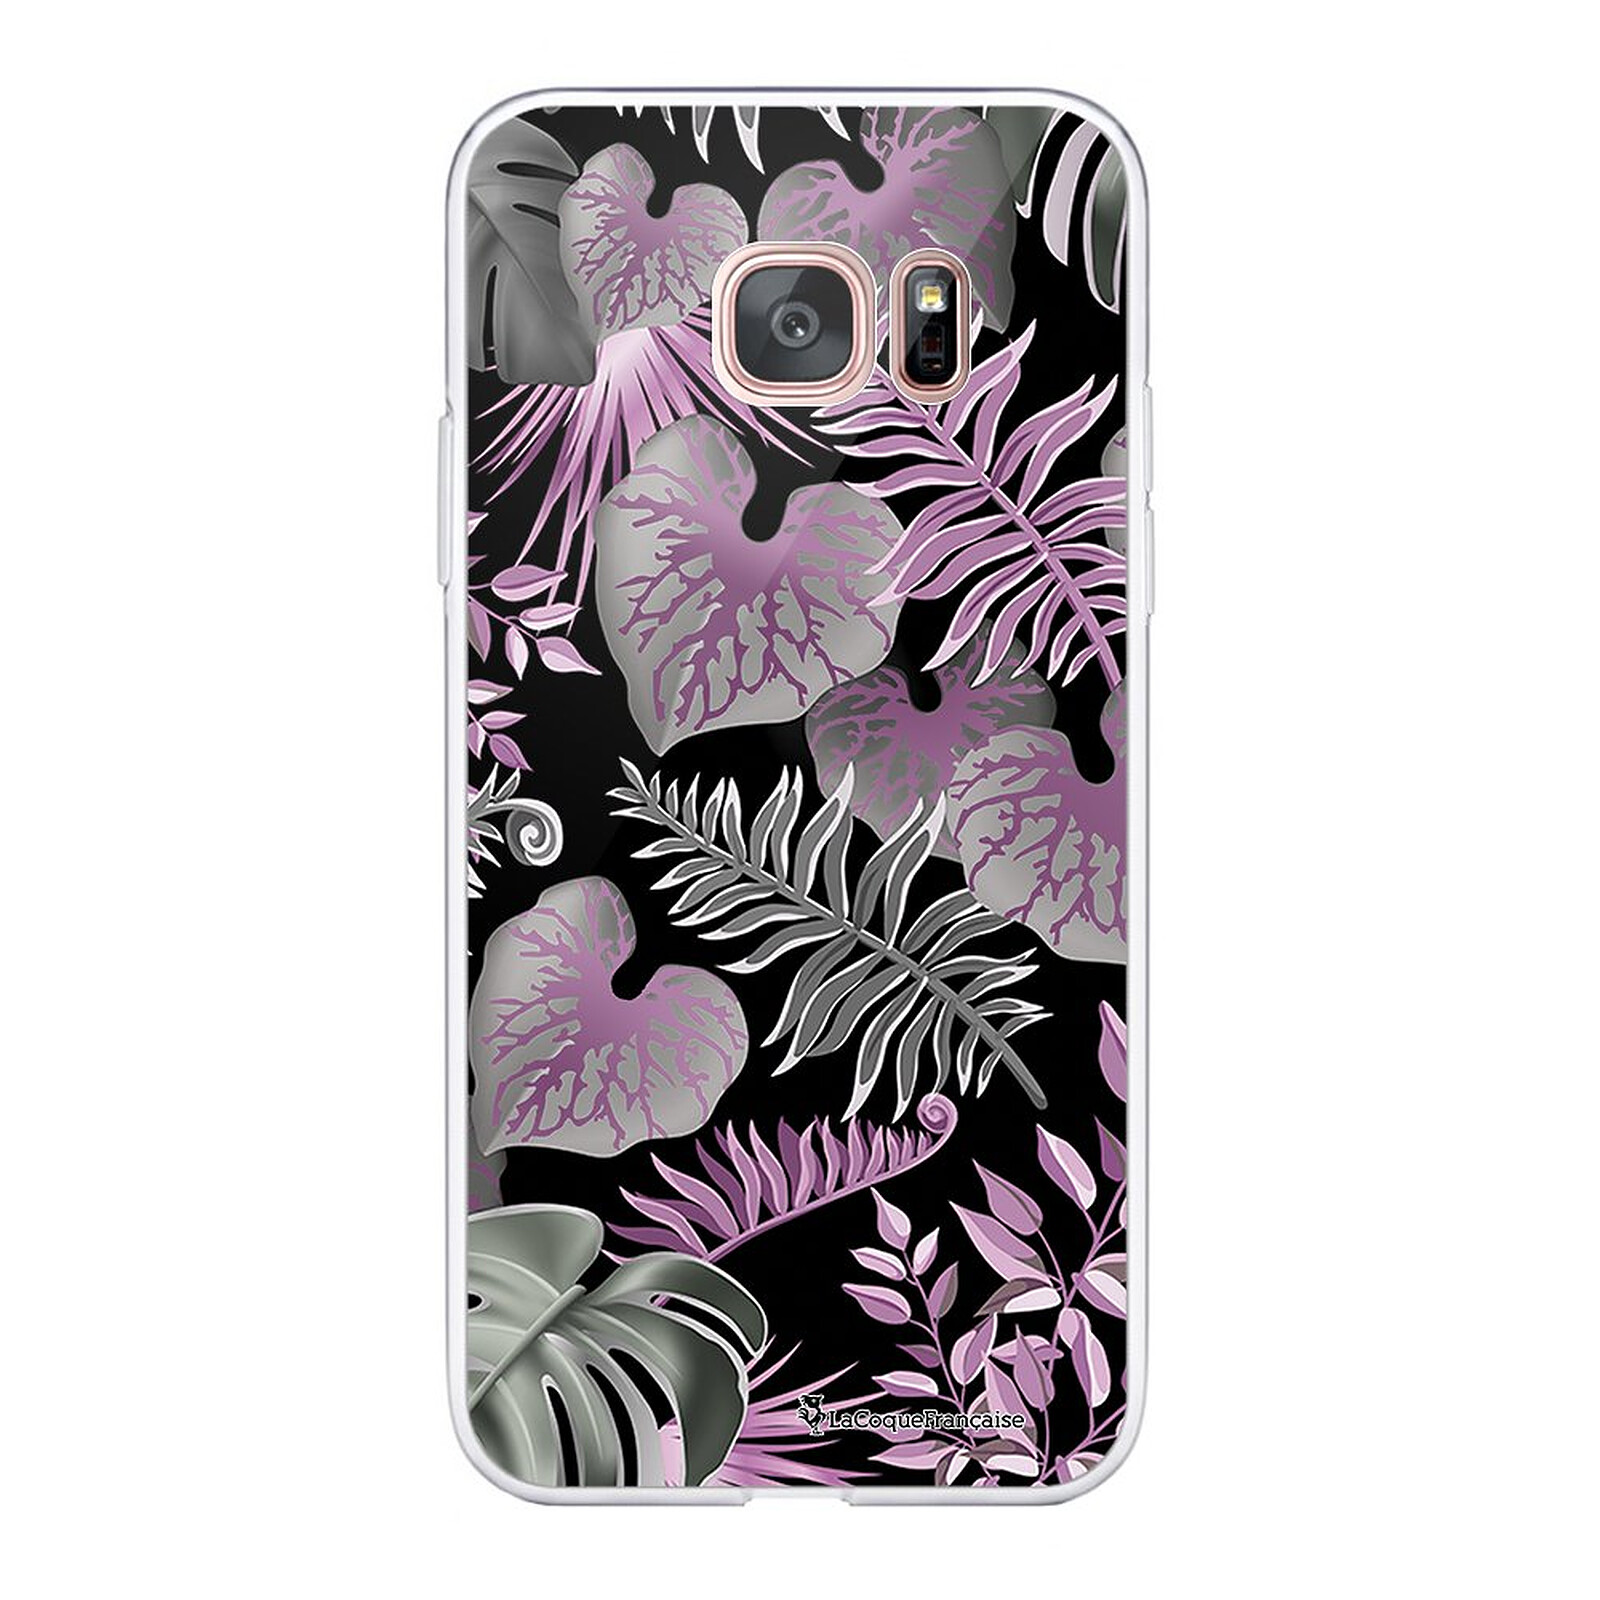 LA COQUE FRANCAISE Coque Samsung Galaxy S7 Edge 360 intégrale transparente Fleurs Tropicales Parme Tendance - Coque téléphone LaCoqueFrançaise sur ...